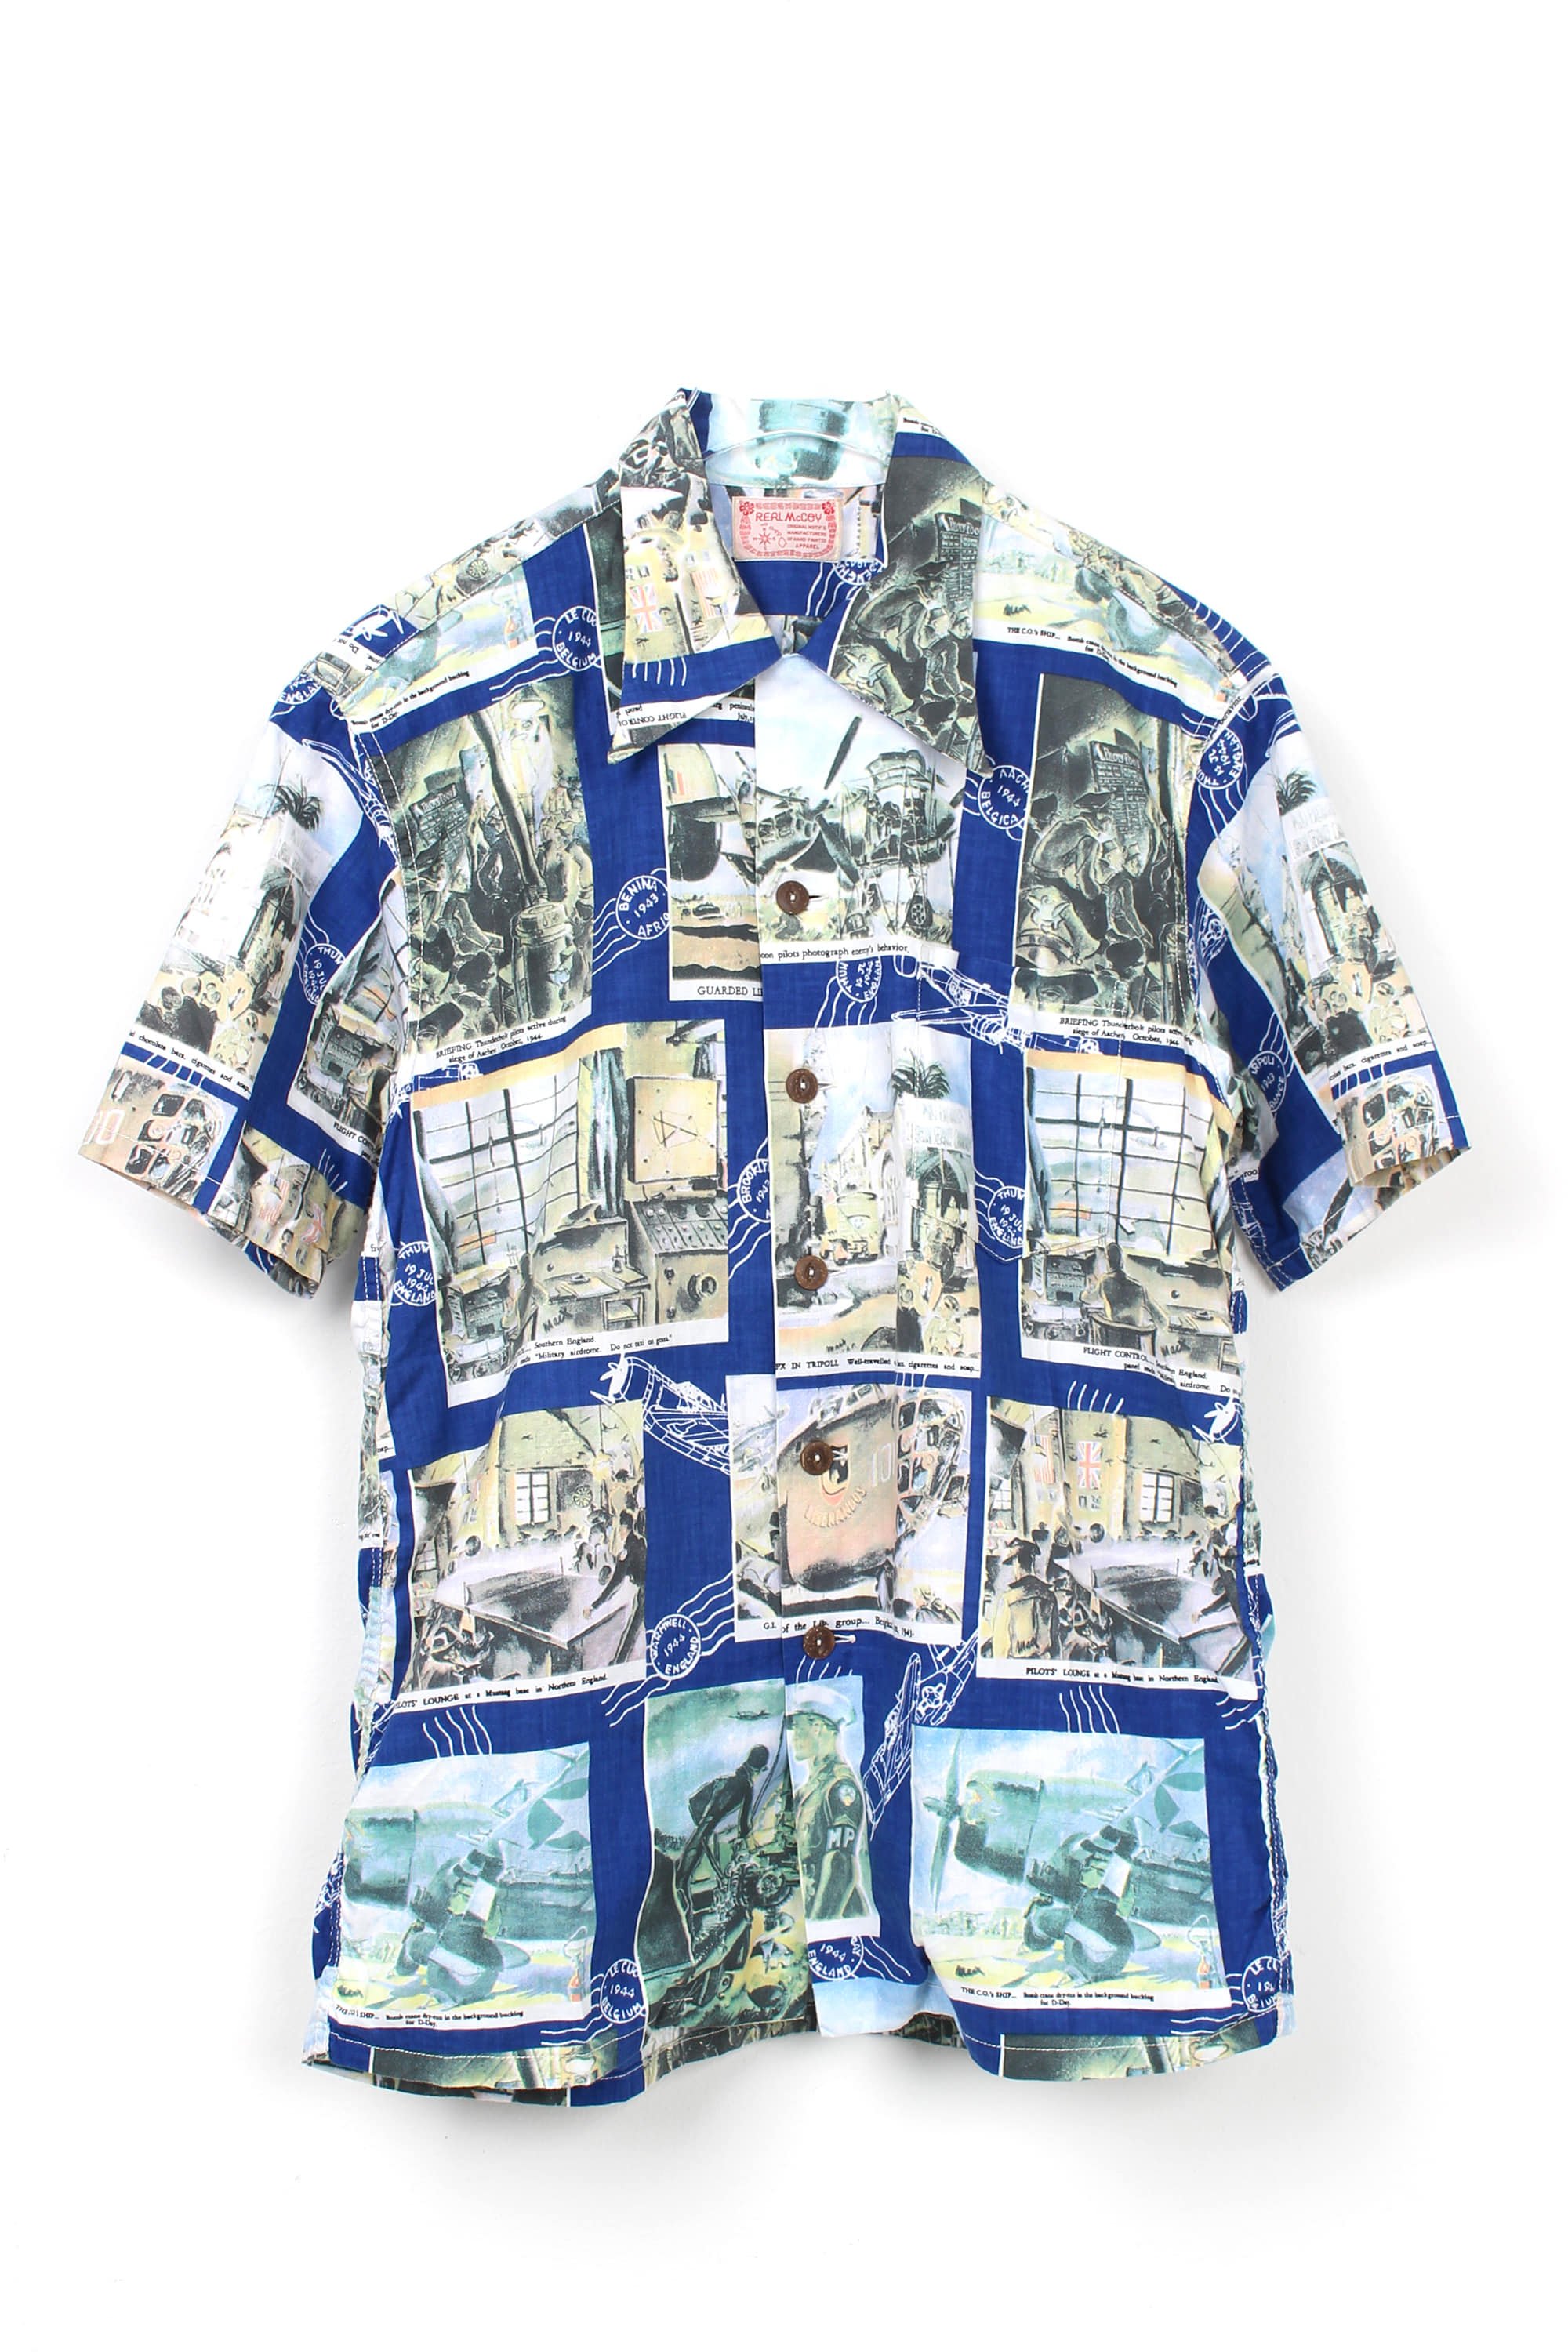 REAL McCOY Aloha Shirts